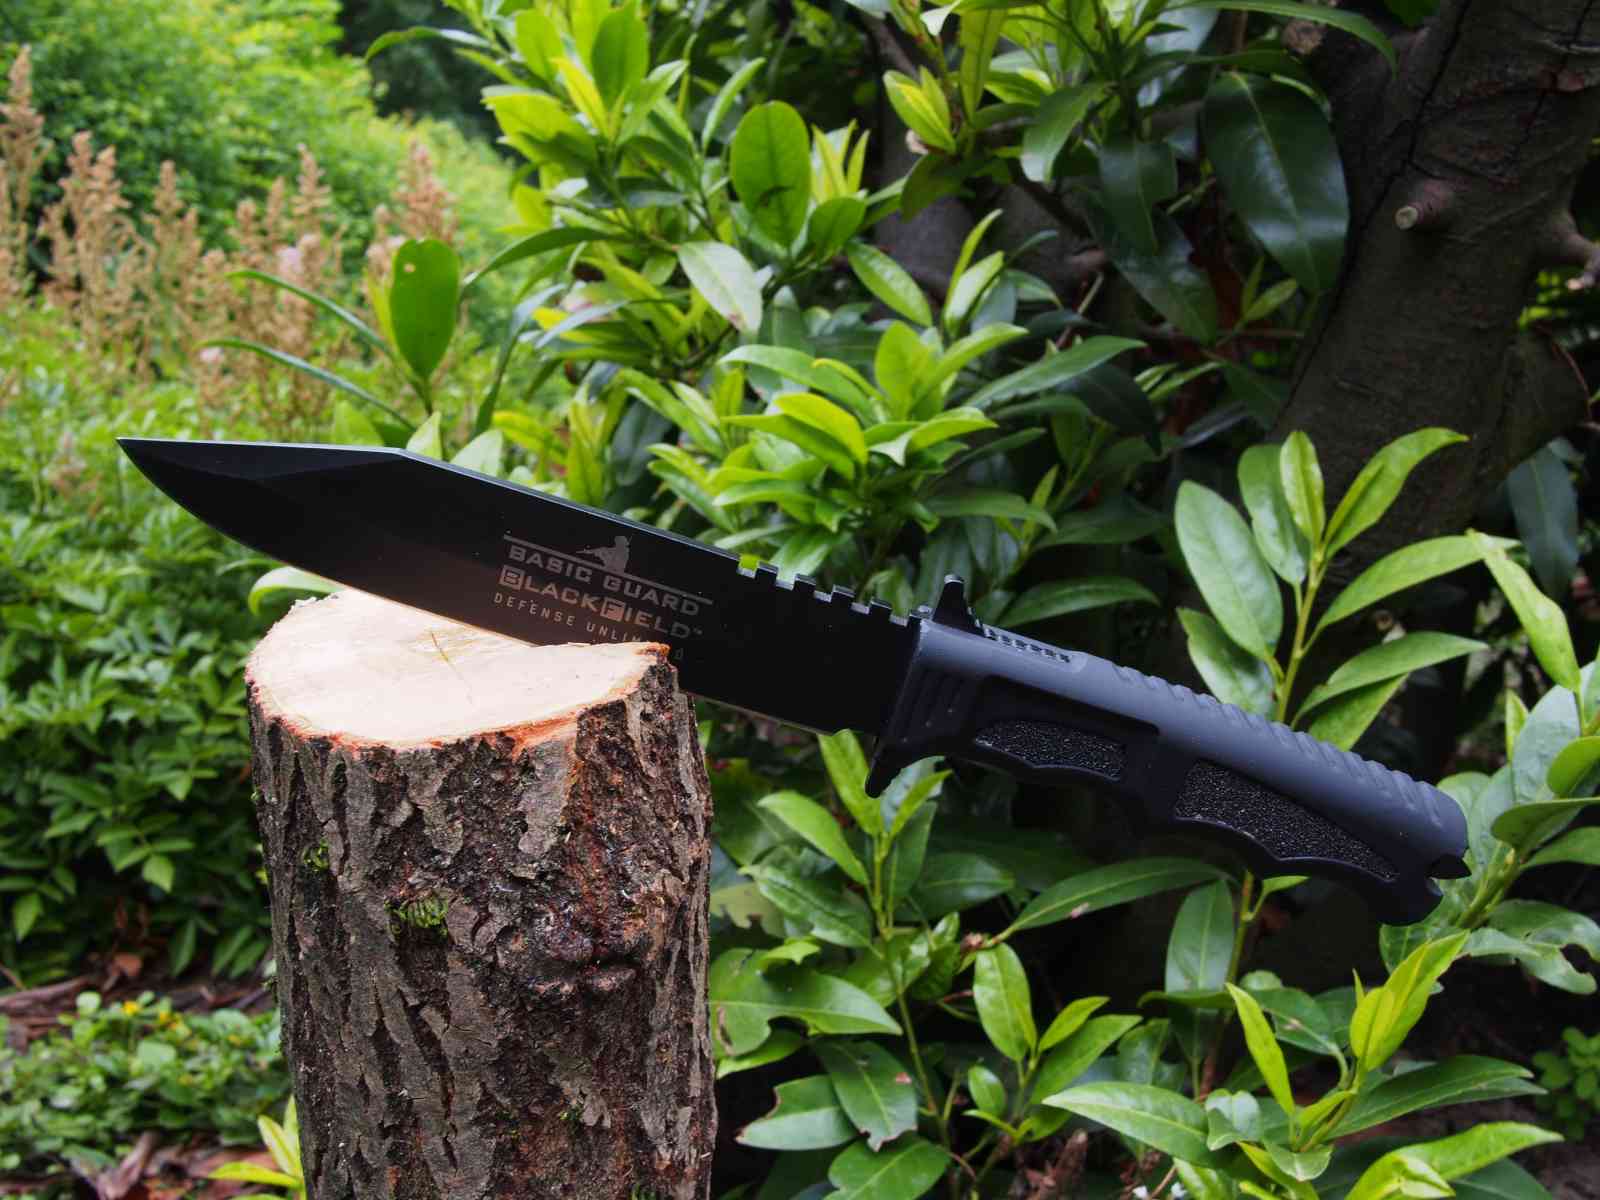 Blackfield Basic Guard - für grobe Holzarbeiten